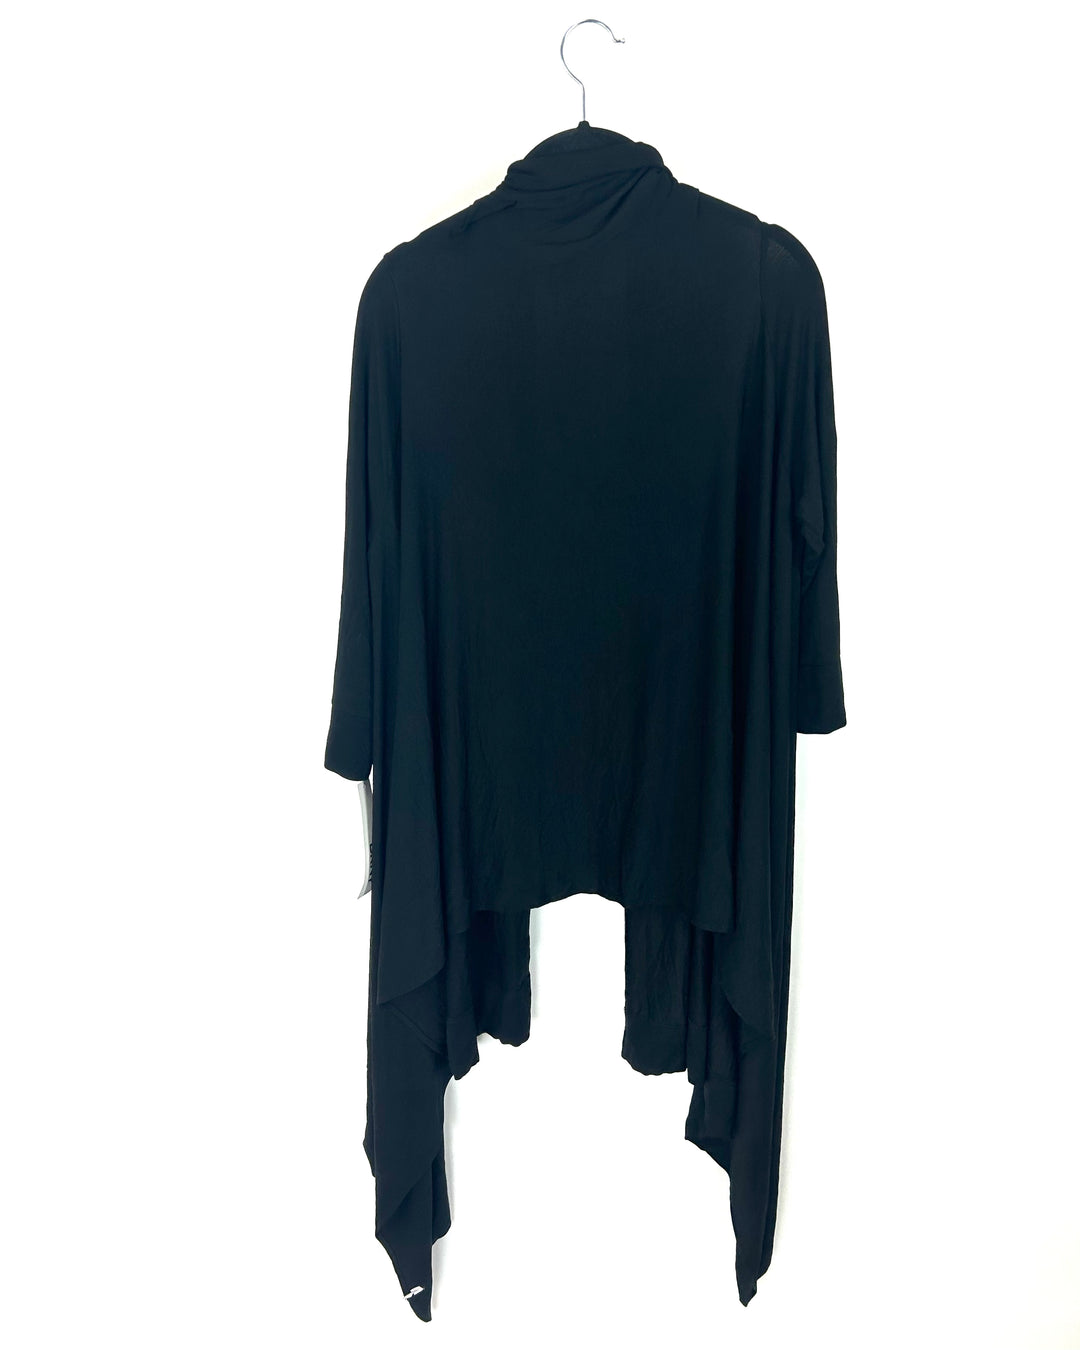 Black Cropped Sleeve Cardigan - Size 6/8